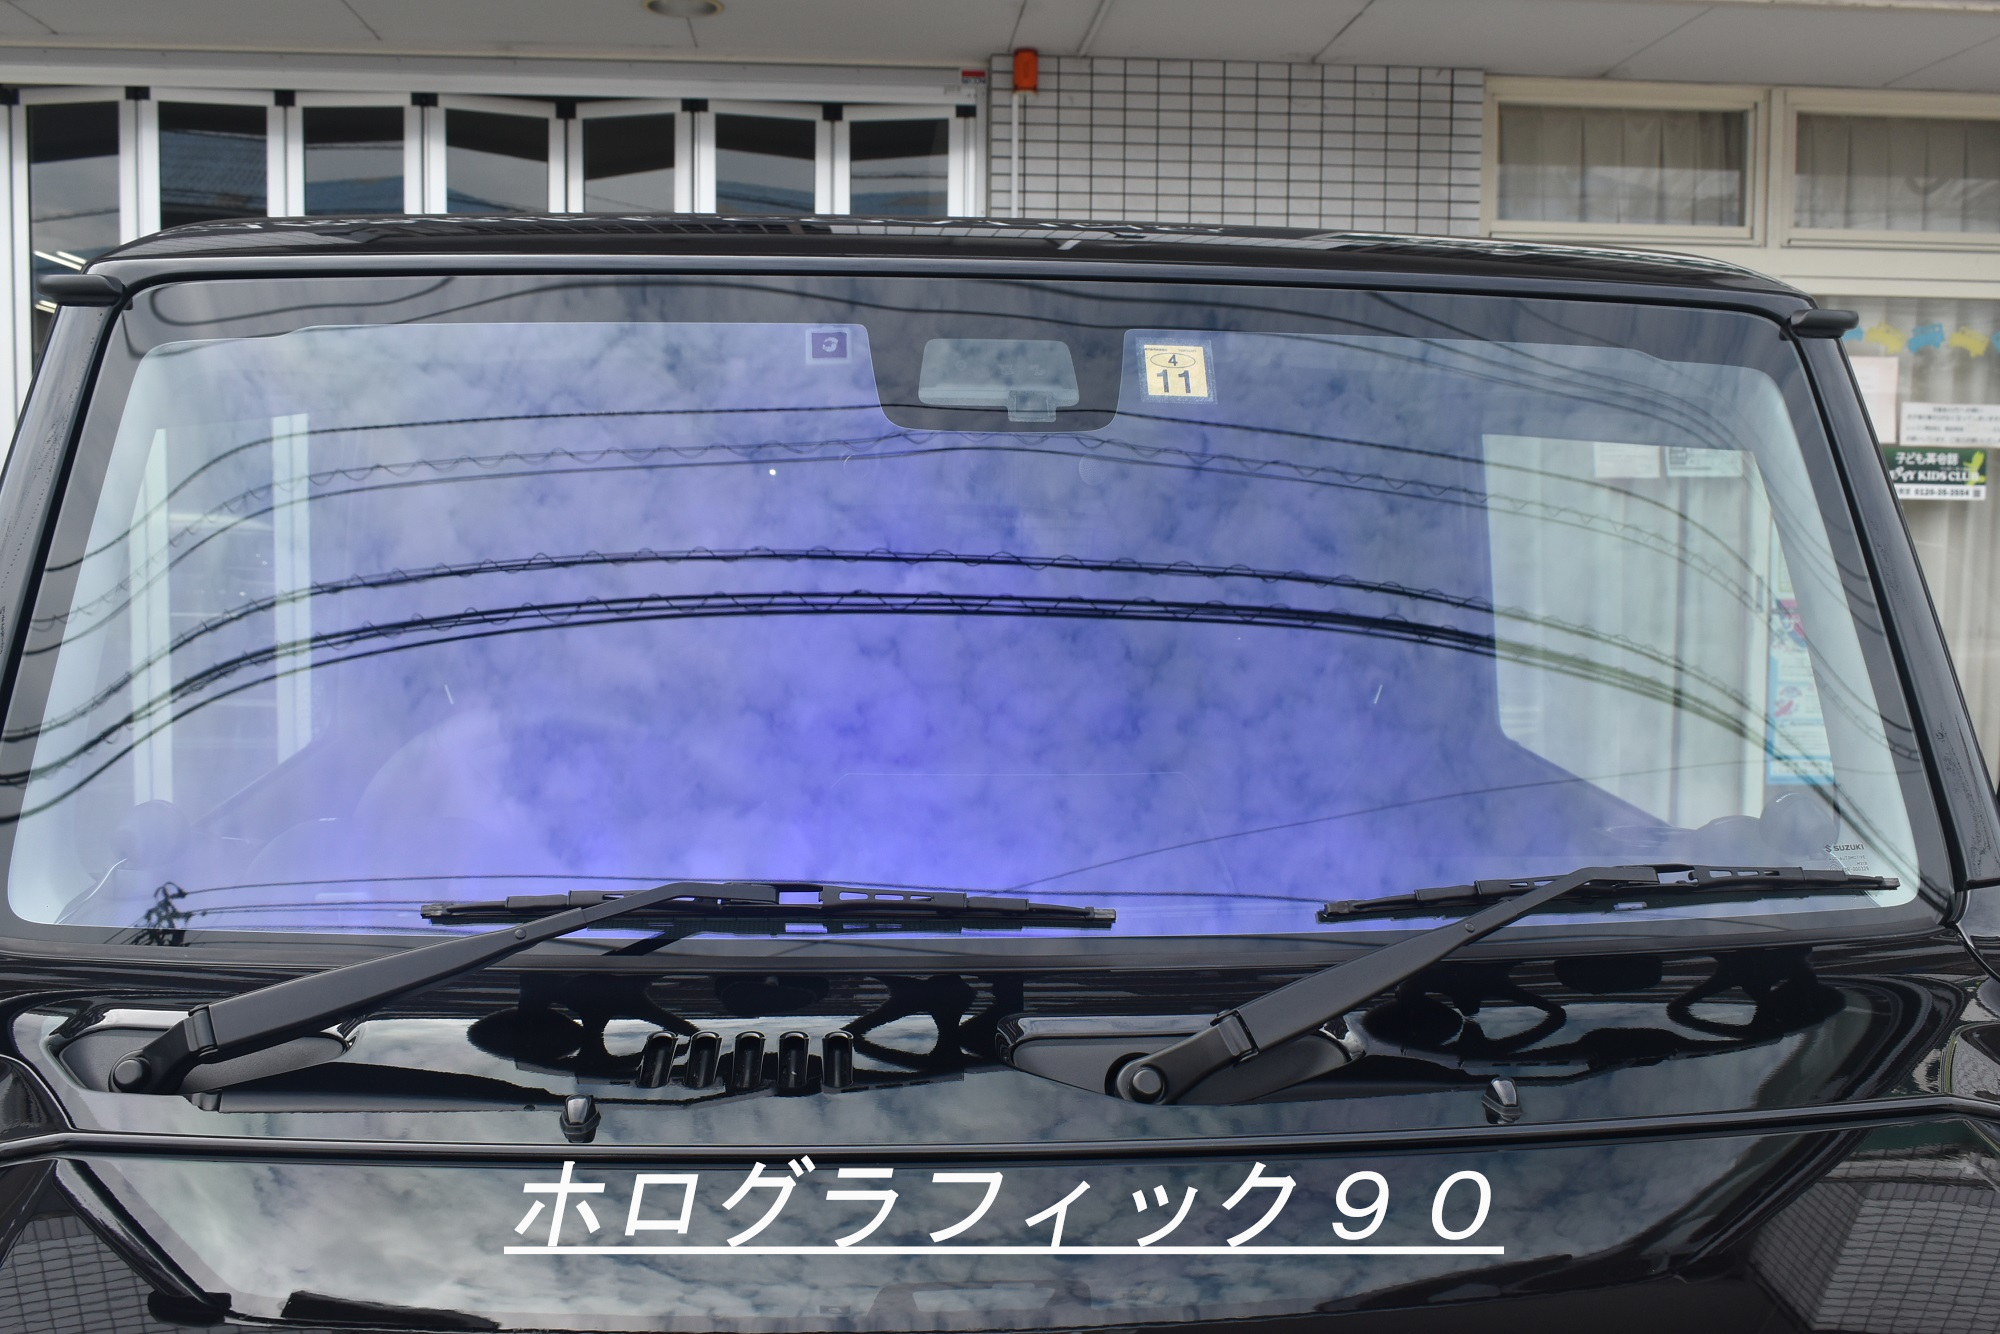 スズキ ジムニーへオーロラフィルム施工 愛媛県松山市 洗練された技術で愛車を守る リボルト松山 ブログ